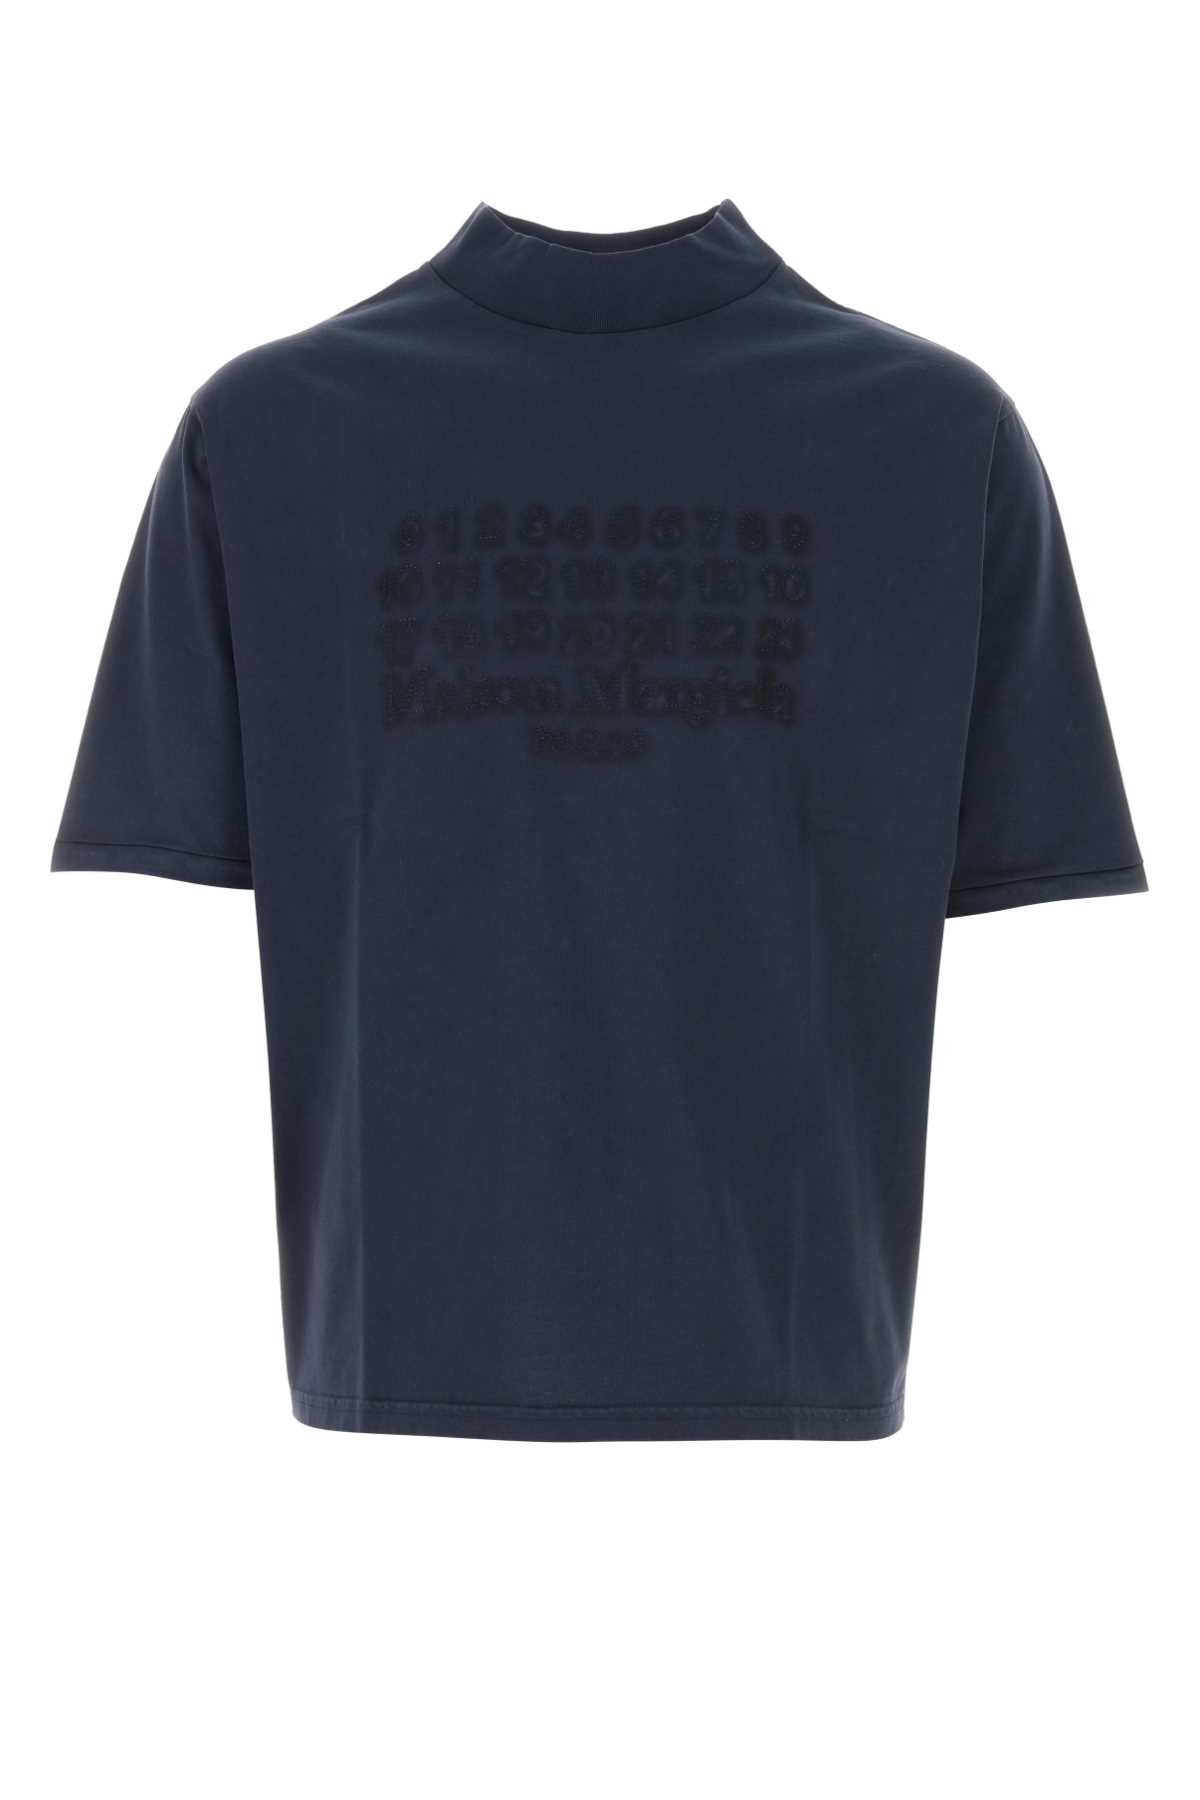 Shop Maison Margiela Navy Blue Cotton T-shirt